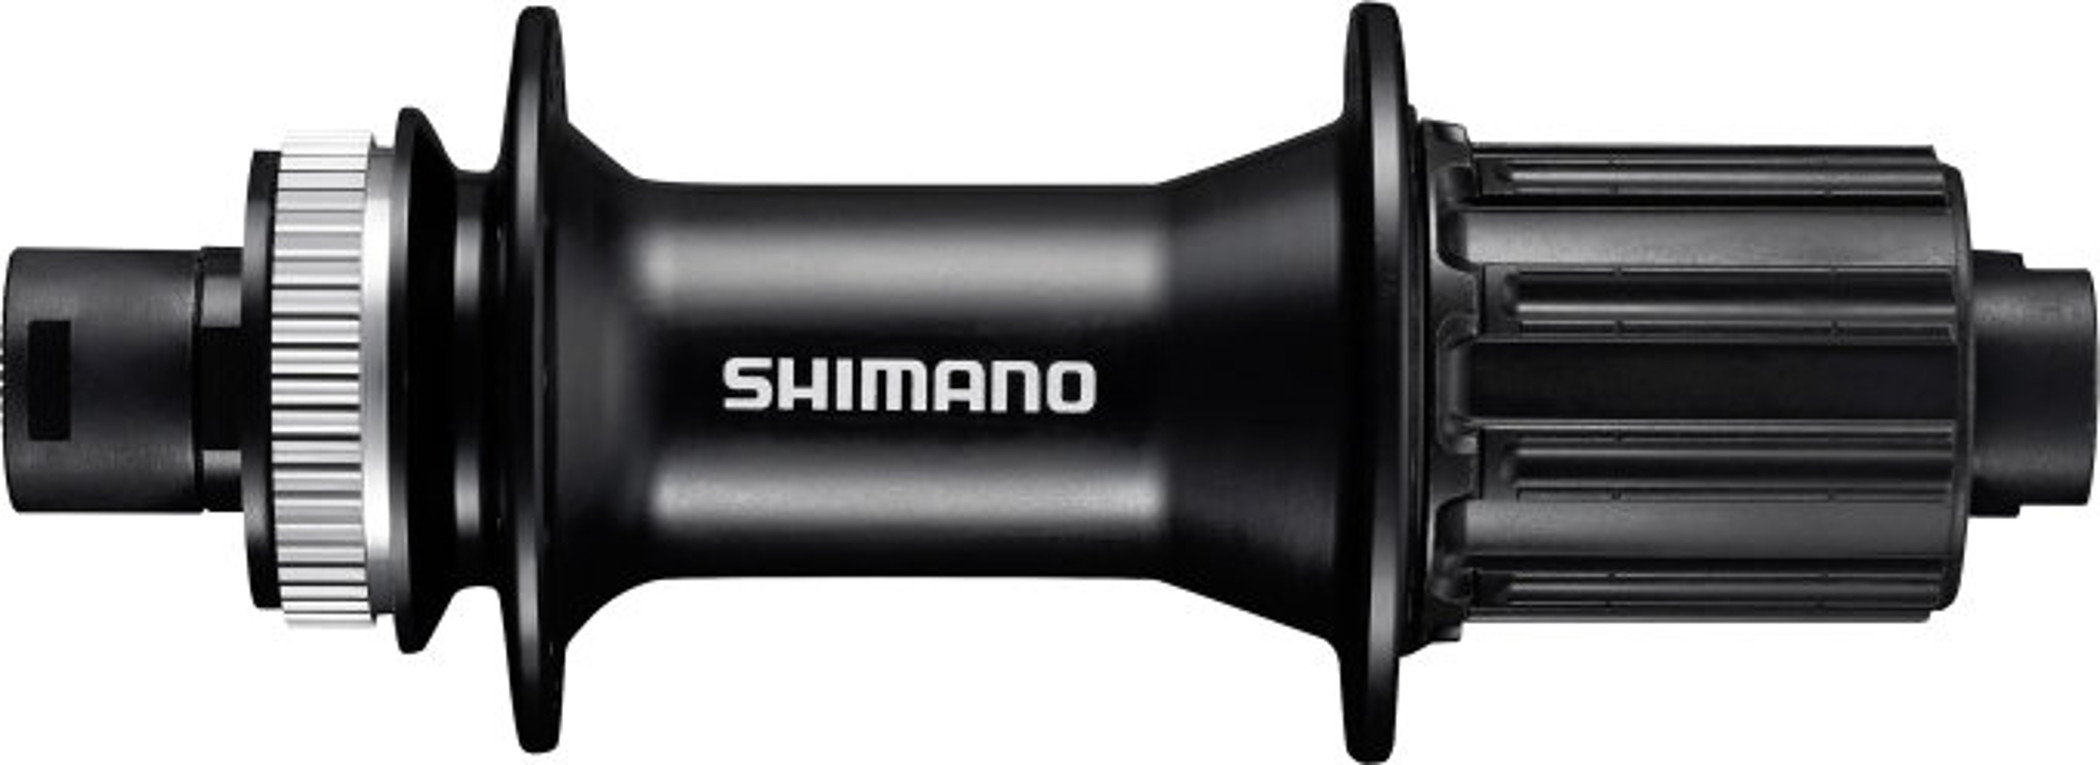  Втулка для велосипеда Shimano MT400, 32 отв, 8-11 ск (EFHMT400B)